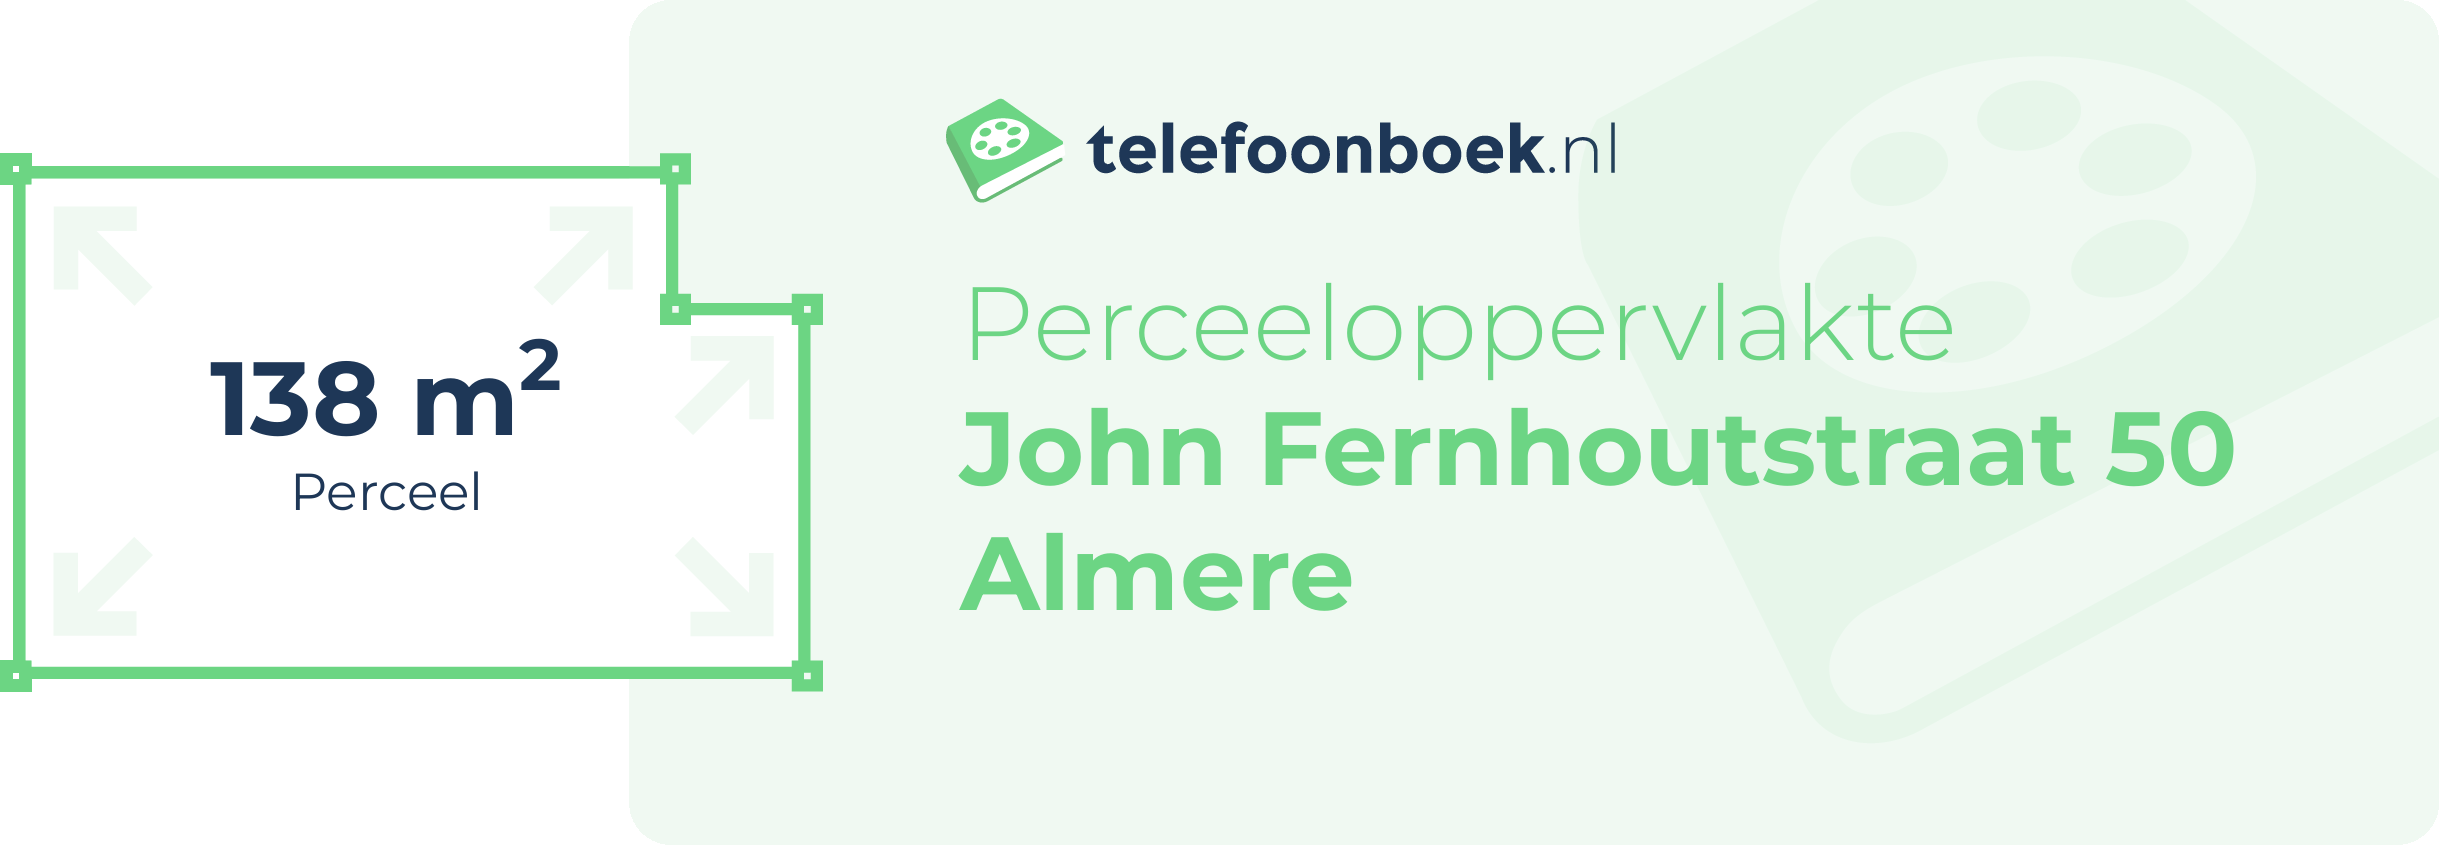 Perceeloppervlakte John Fernhoutstraat 50 Almere